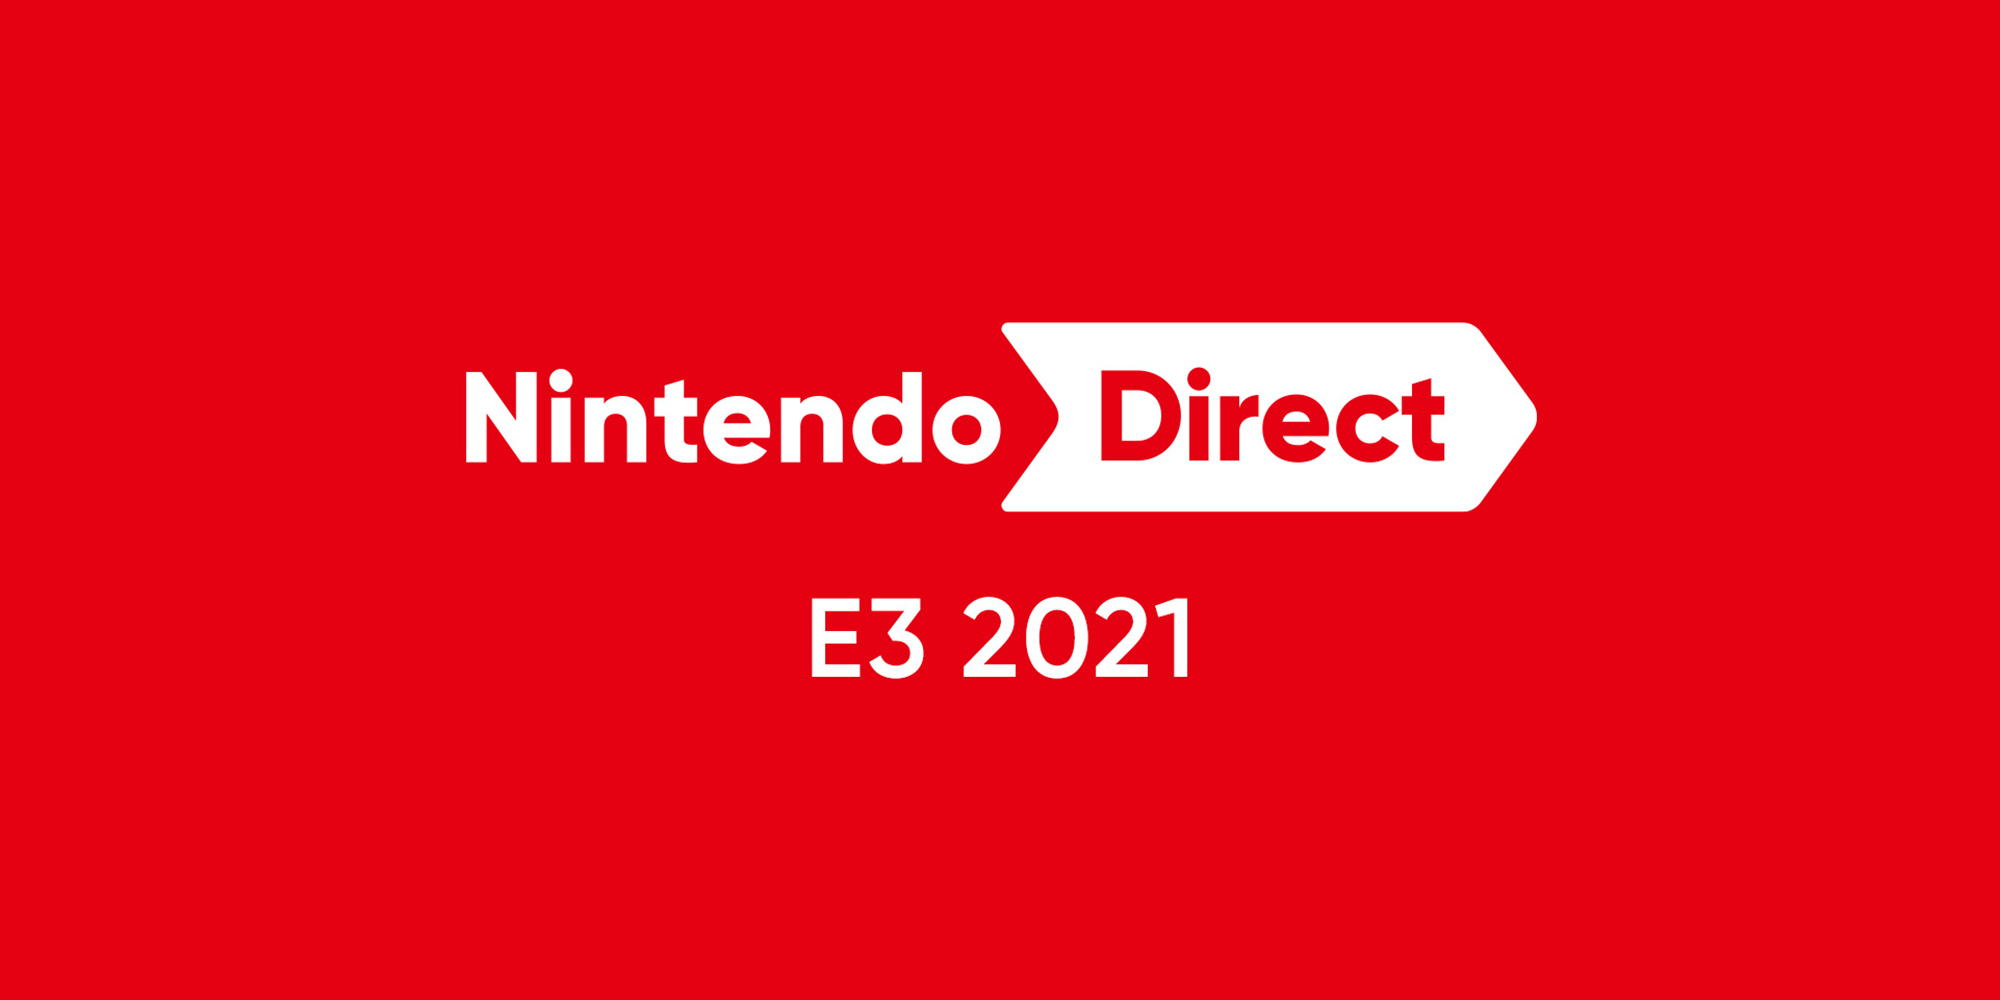 Nintendo at E3 2021